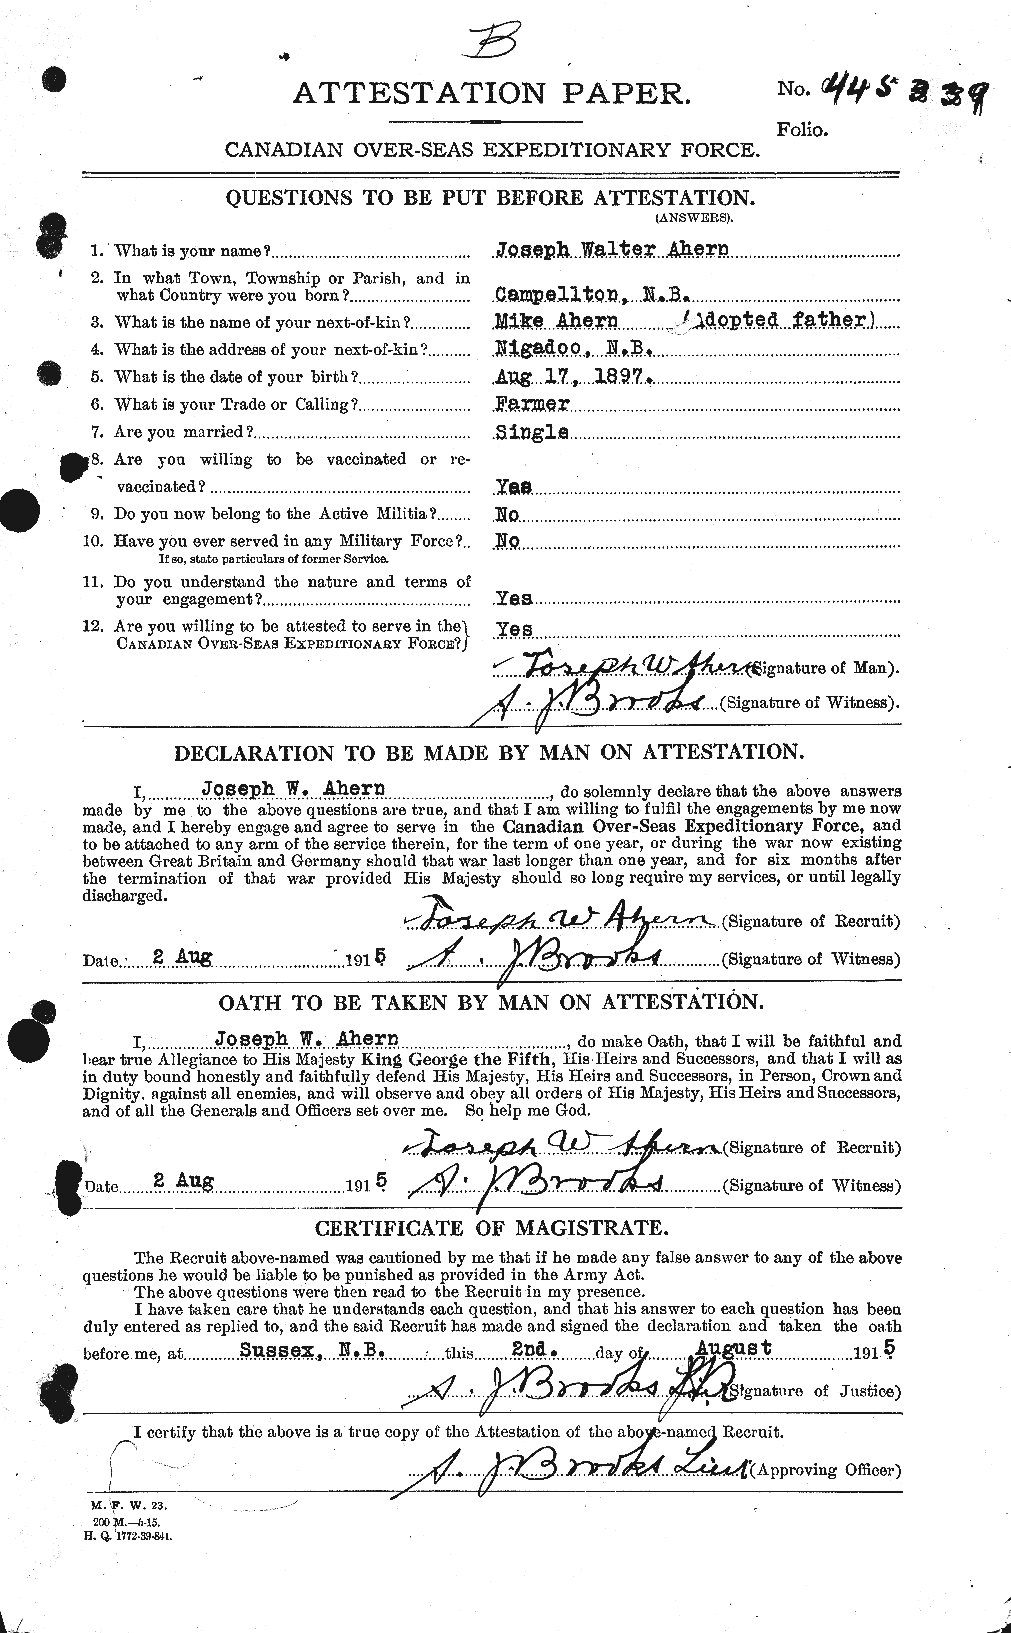 Dossiers du Personnel de la Première Guerre mondiale - CEC 203872a